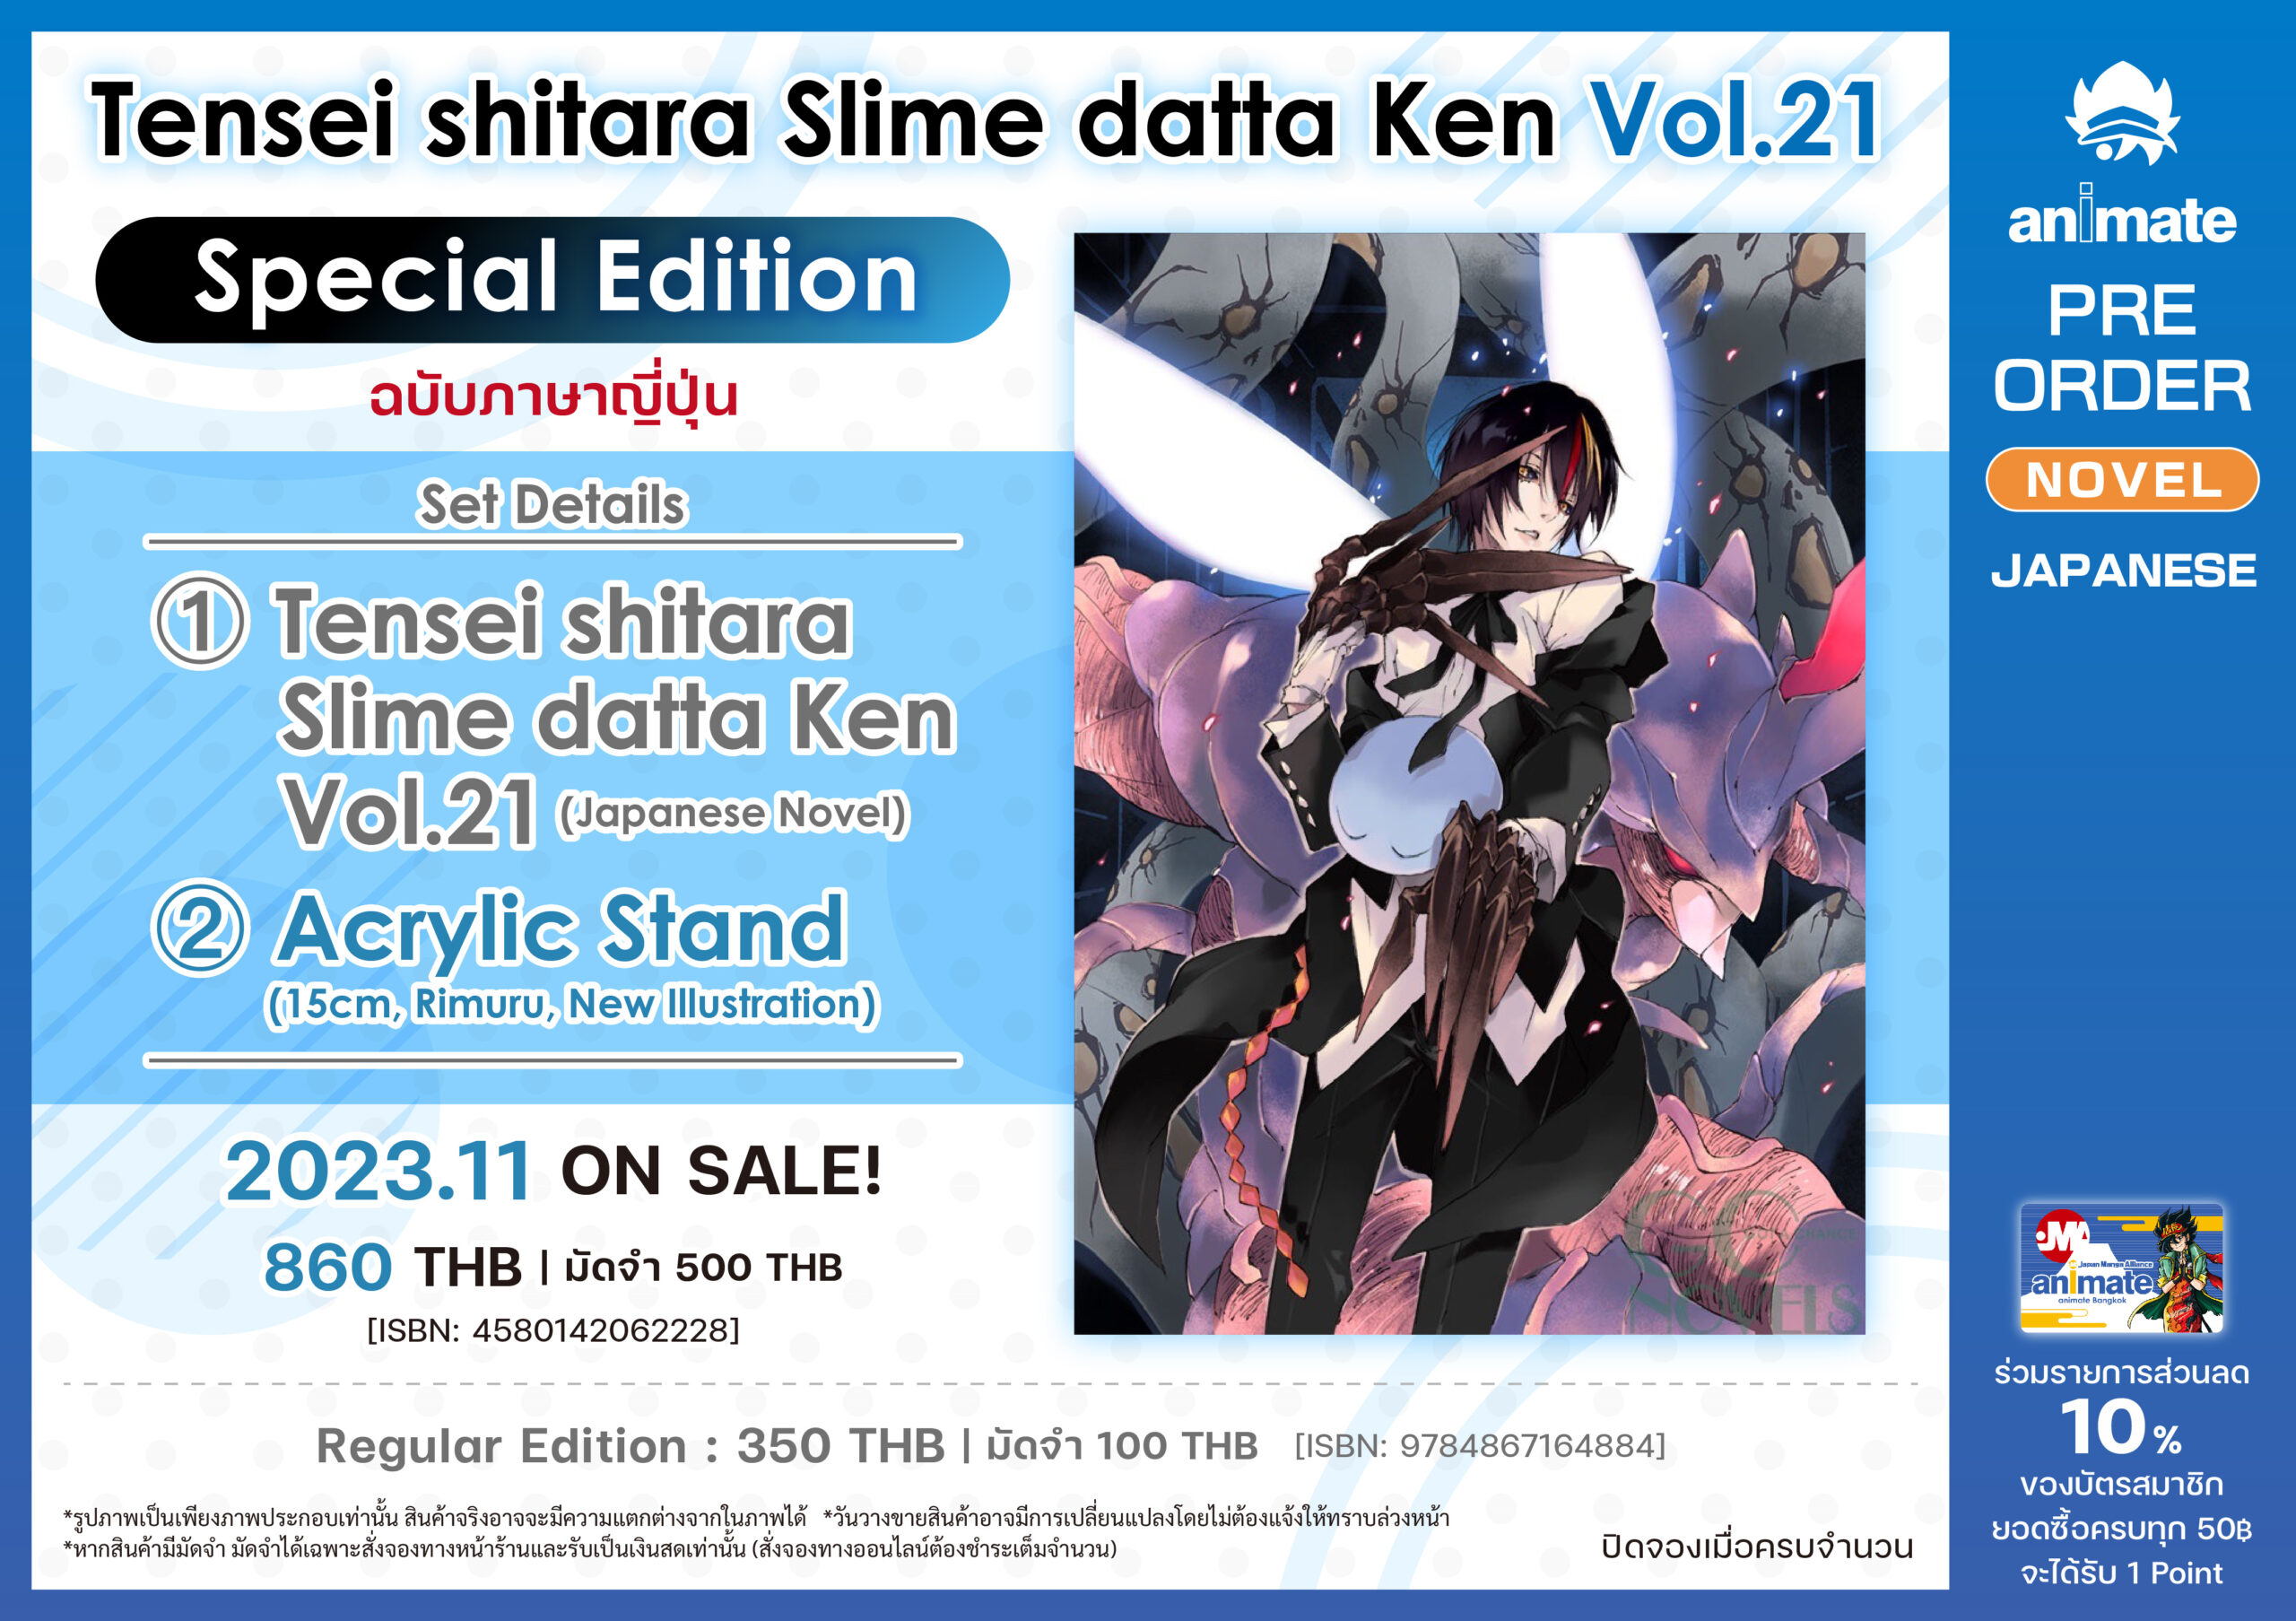 tensei shitara slime - Buy tensei shitara slime at Best Price in